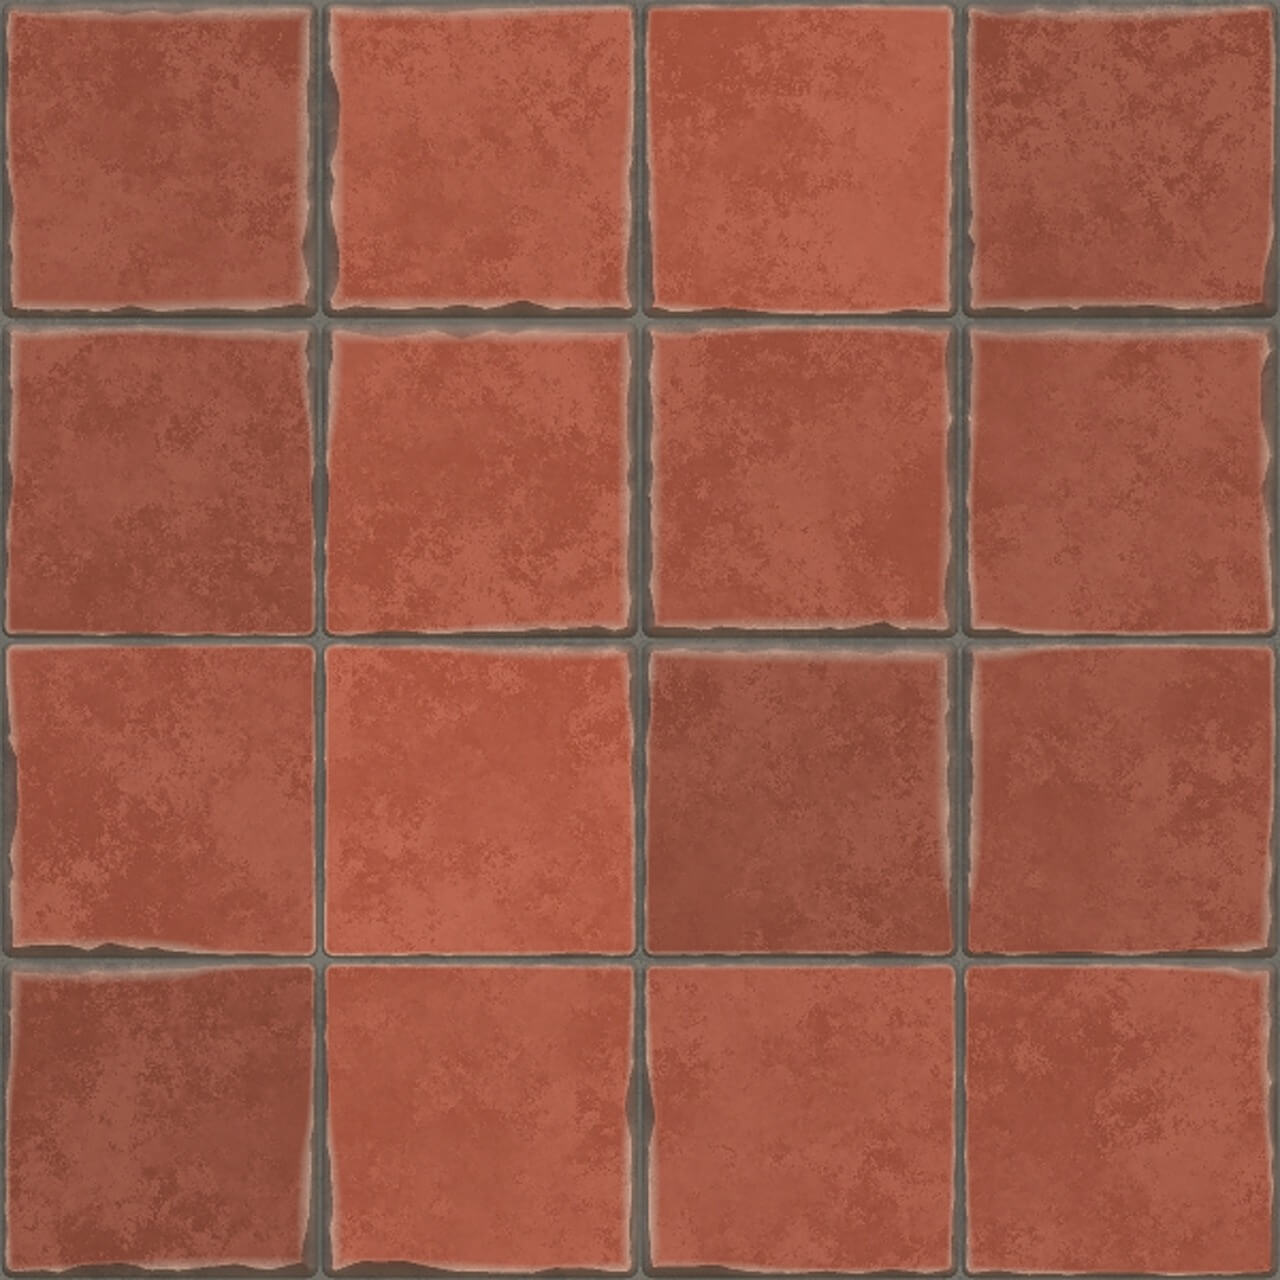 terracotta-tiles-941741_1280